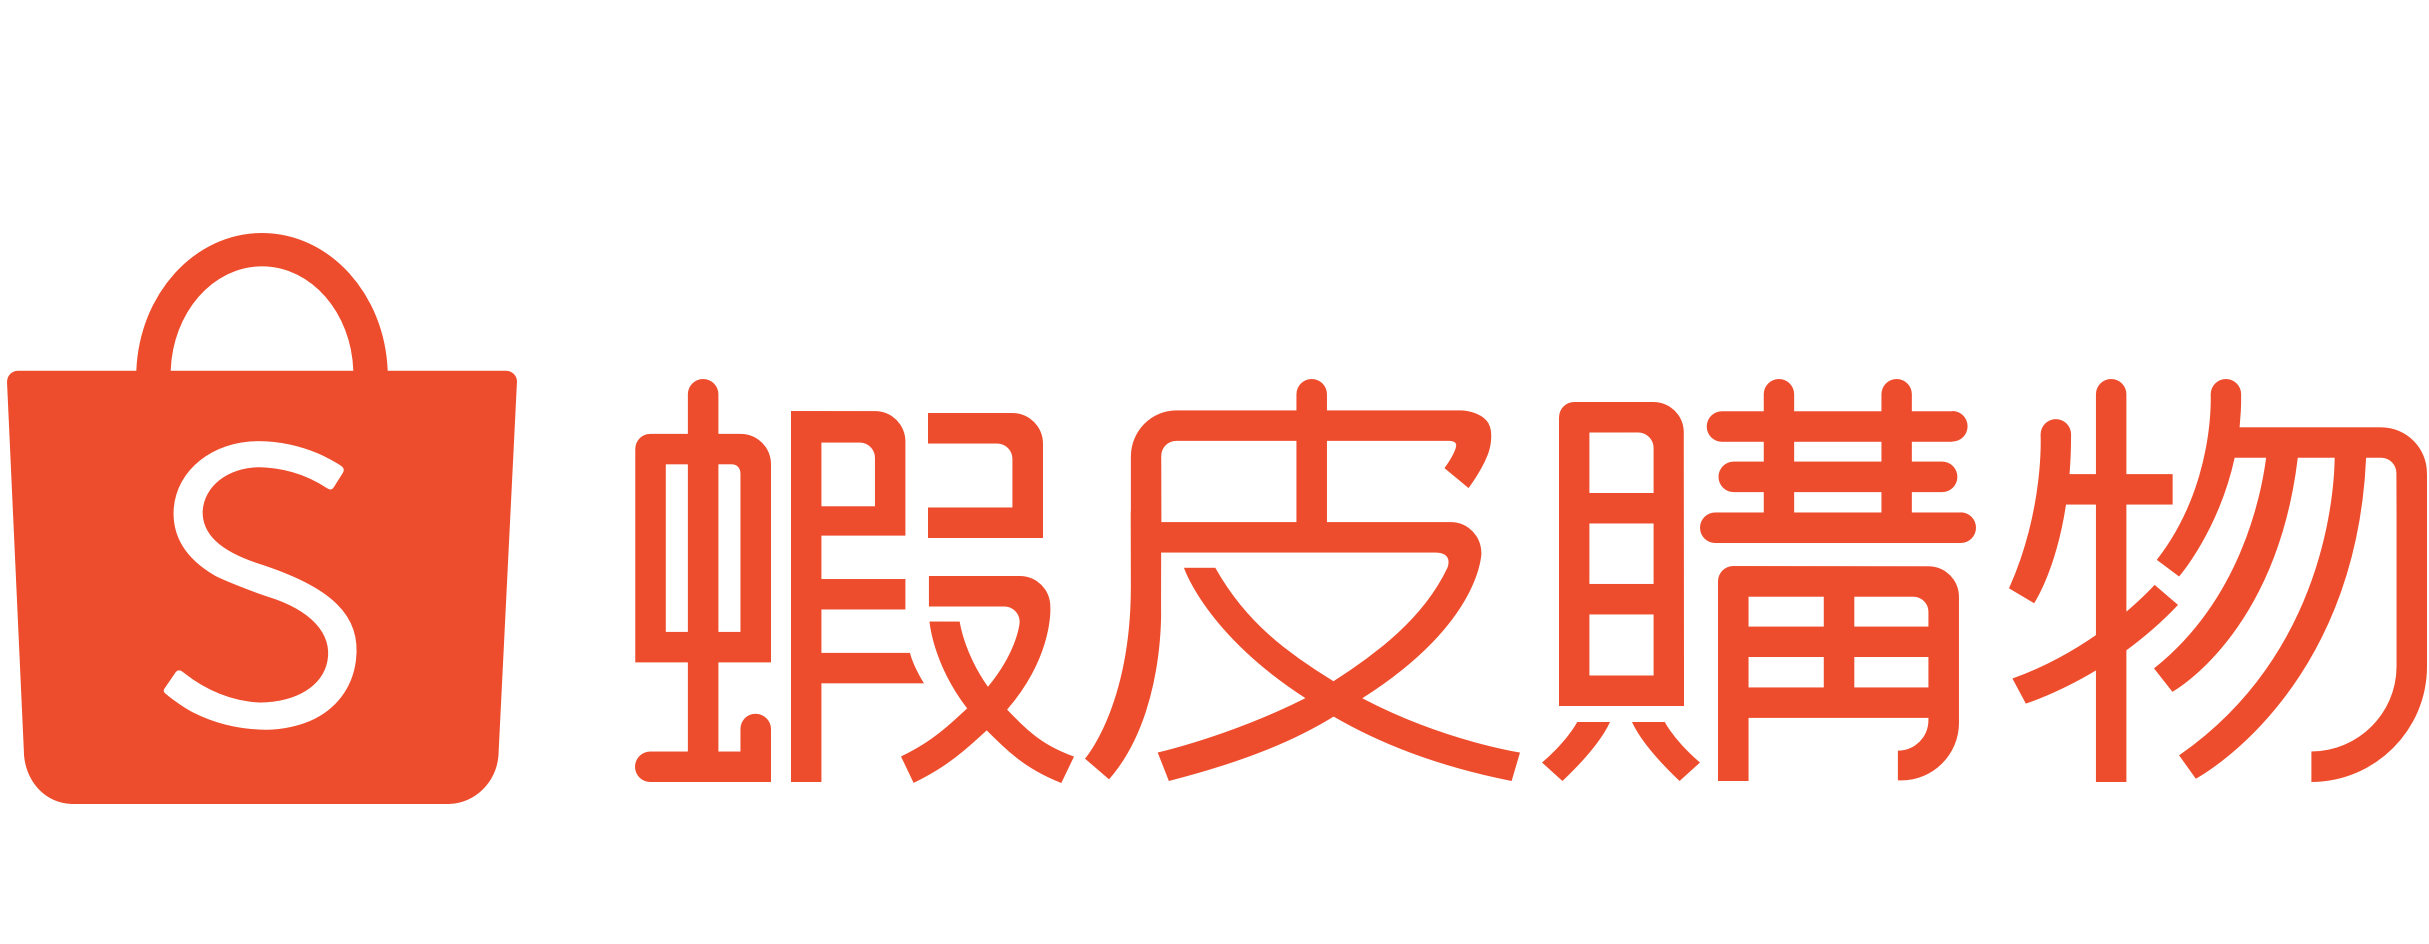 shopee chinese emblem logo